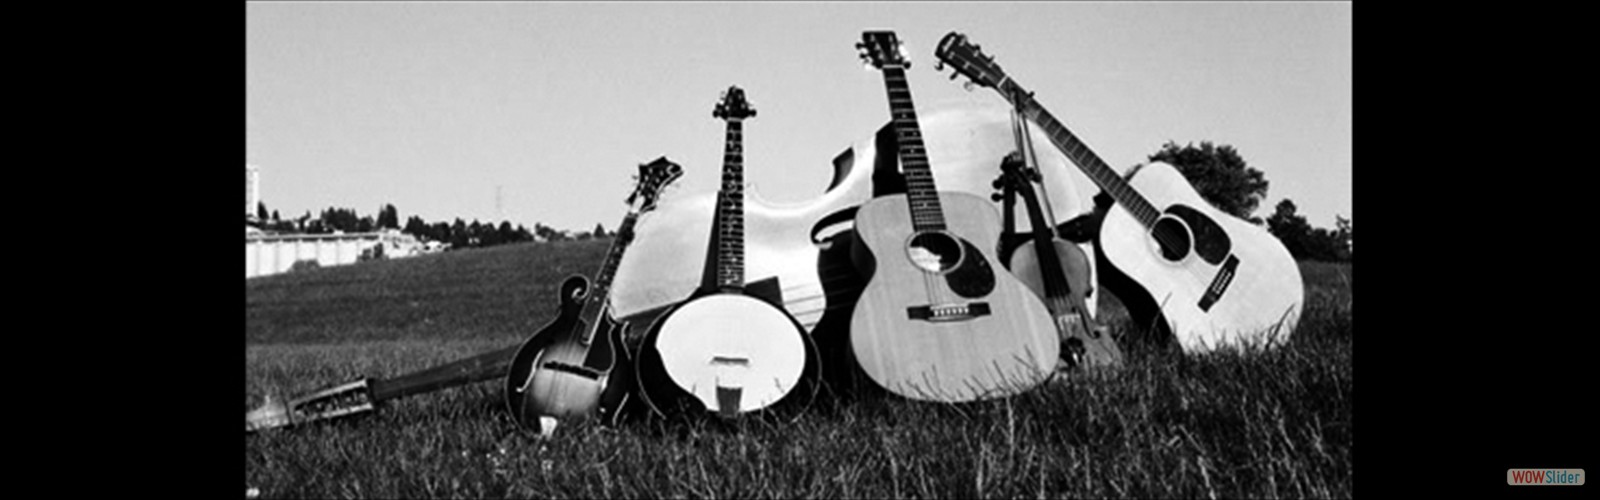 bluegrassinstruments